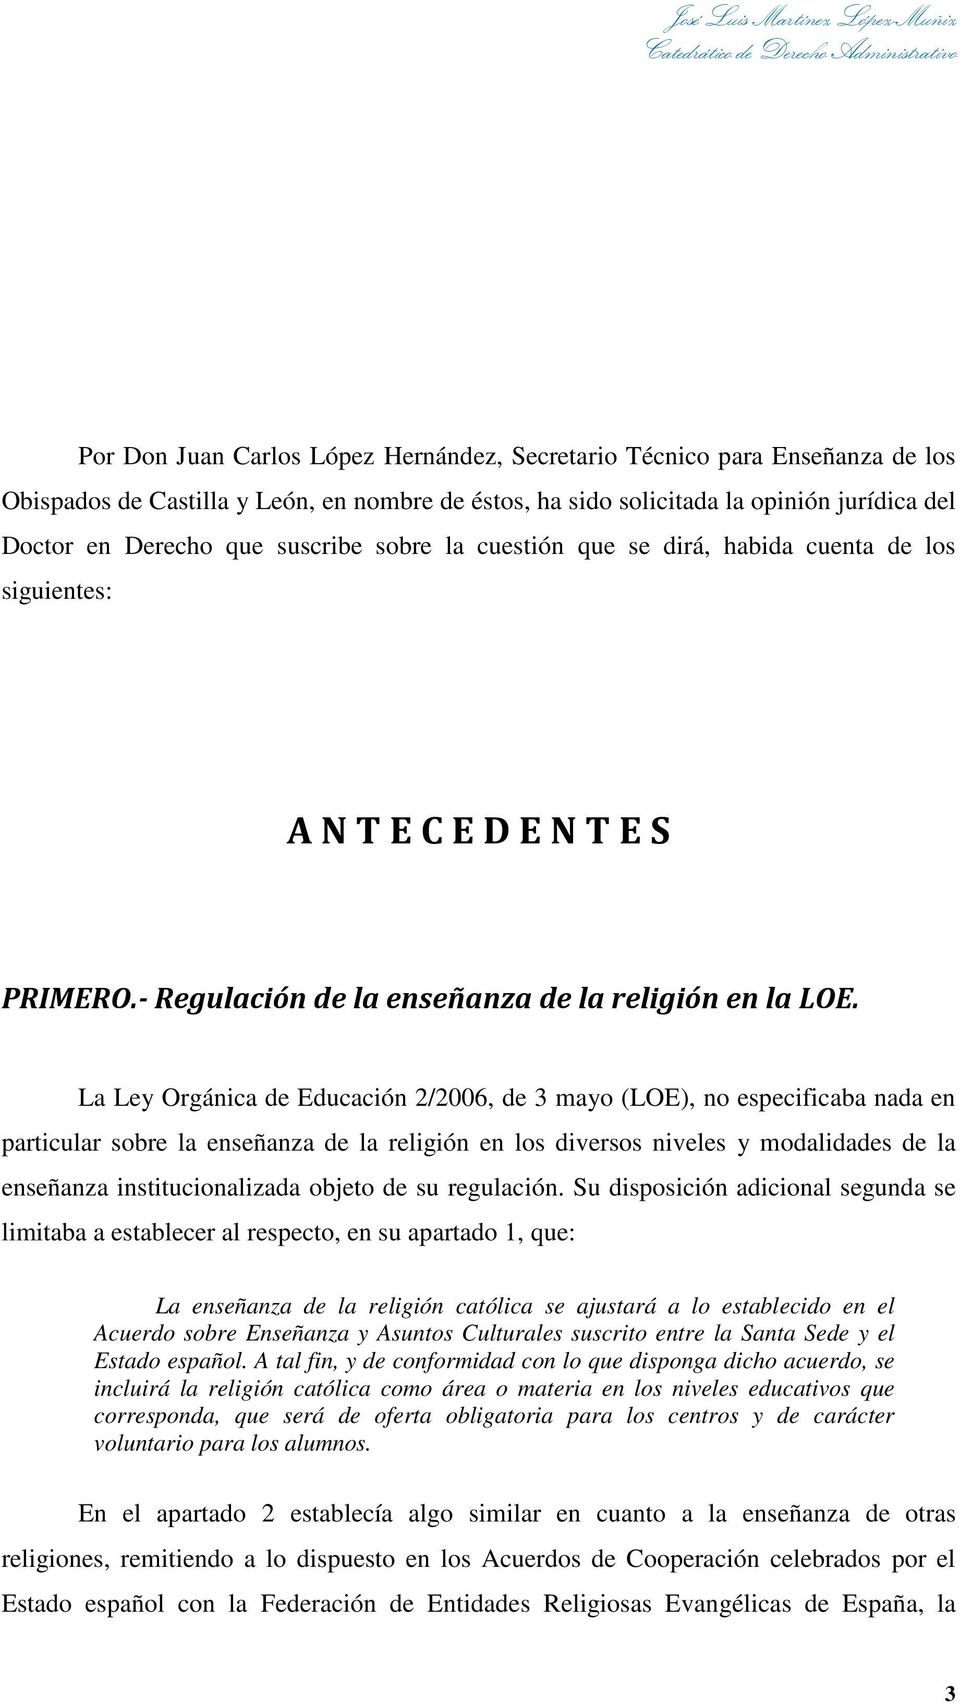 La Ley Orgánica de Educación 2/2006, de 3 mayo (LOE), no especificaba nada en particular sobre la enseñanza de la religión en los diversos niveles y modalidades de la enseñanza institucionalizada